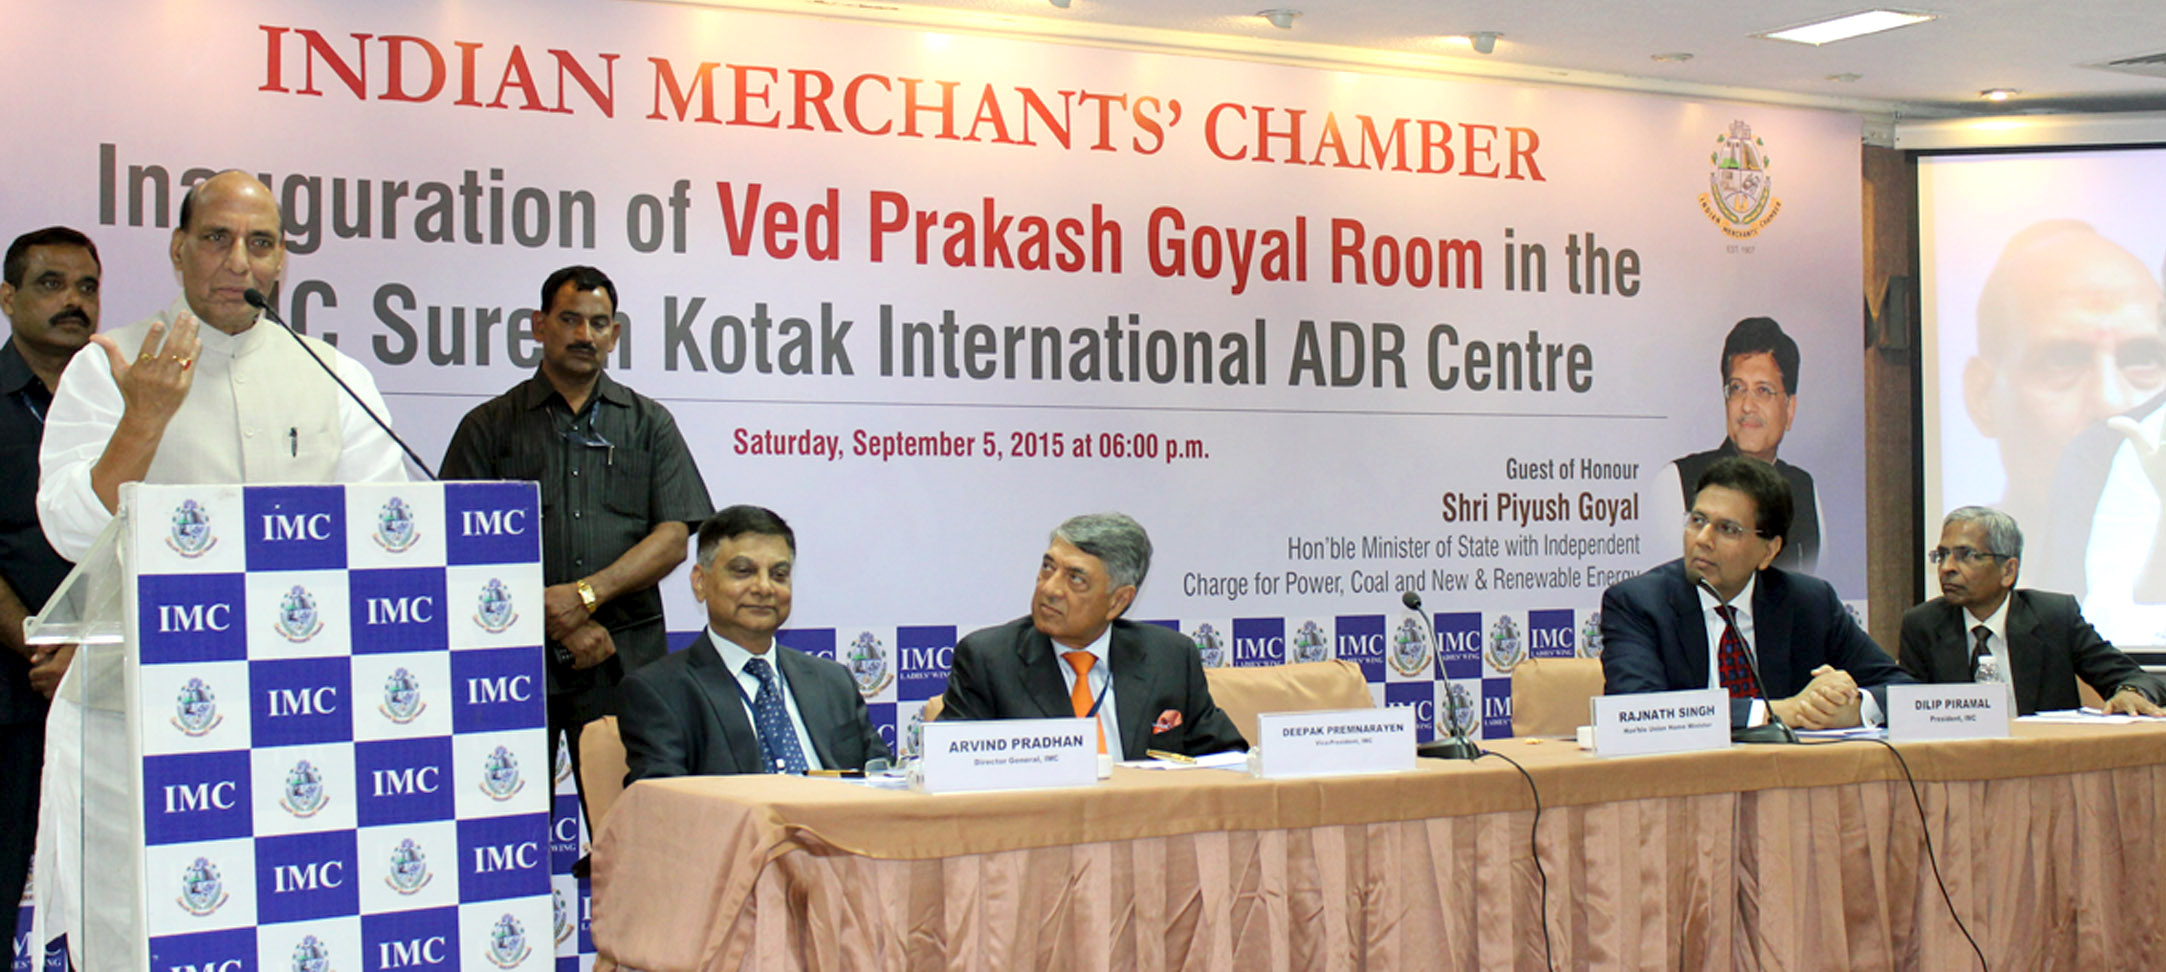 The Union Home Minister, Shri Rajnath Singh addressing at the Inauguration of Ved Prakesh Goel Romm in the IMC Suresh Kotak International ADR, in Mumbai on September 05, 2015.